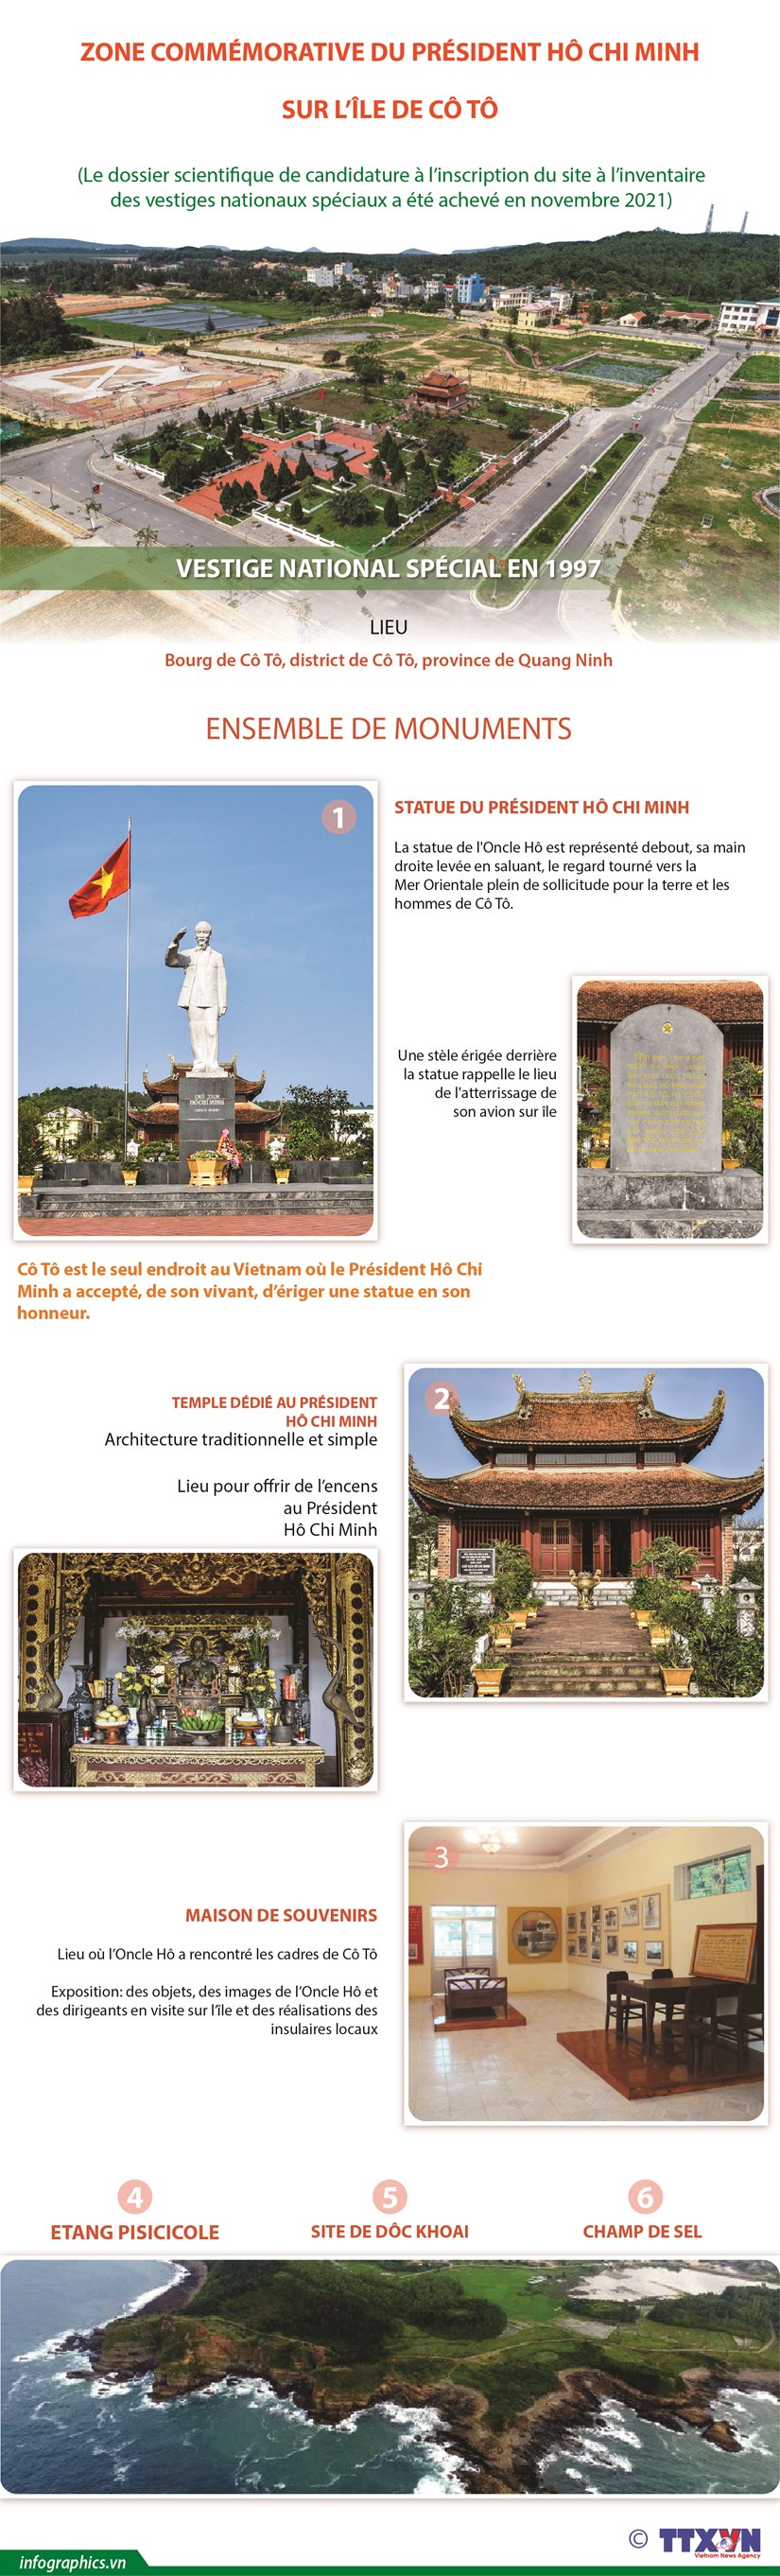 Visite de la Zone commemorative du President Ho Chi Minh sur l'ile de Co To hinh anh 1